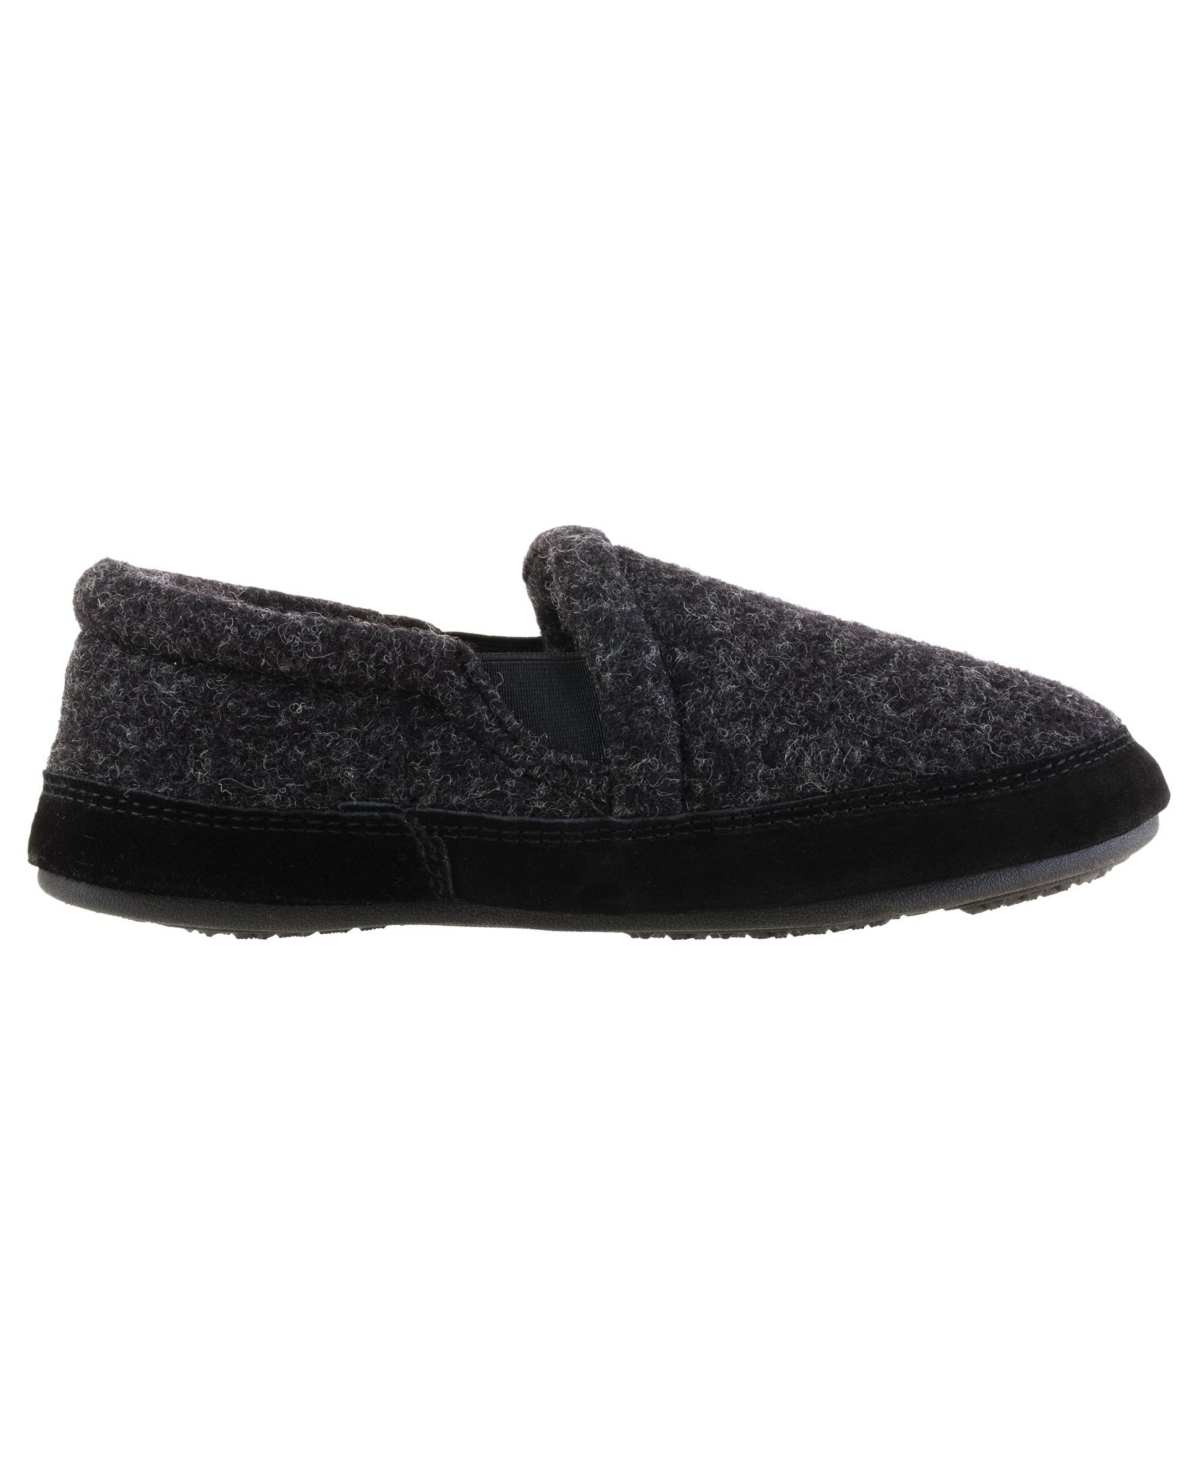 Acorn Men's Fave Gore Comfort Slippers - Black Tweed